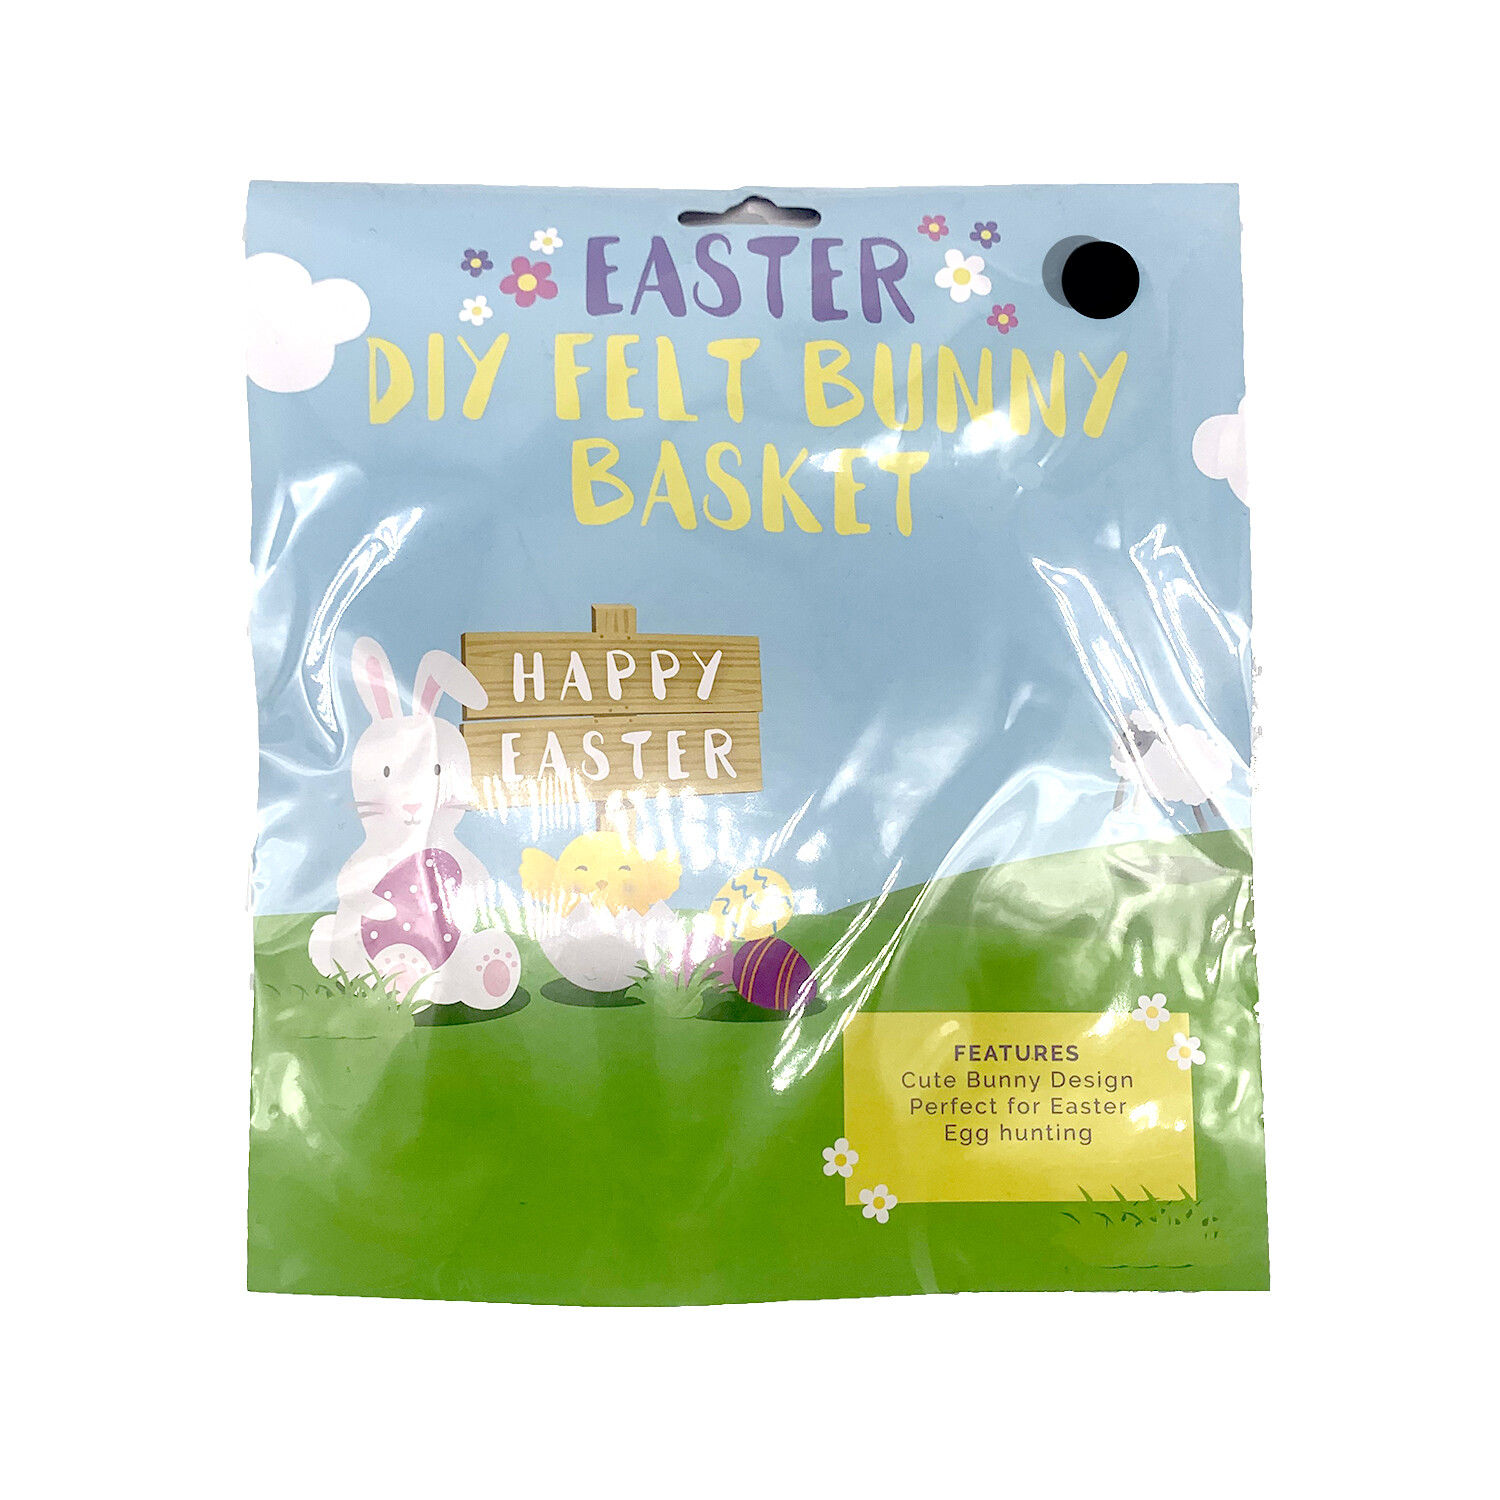 Diy Easter Felt Bunny Basket Image